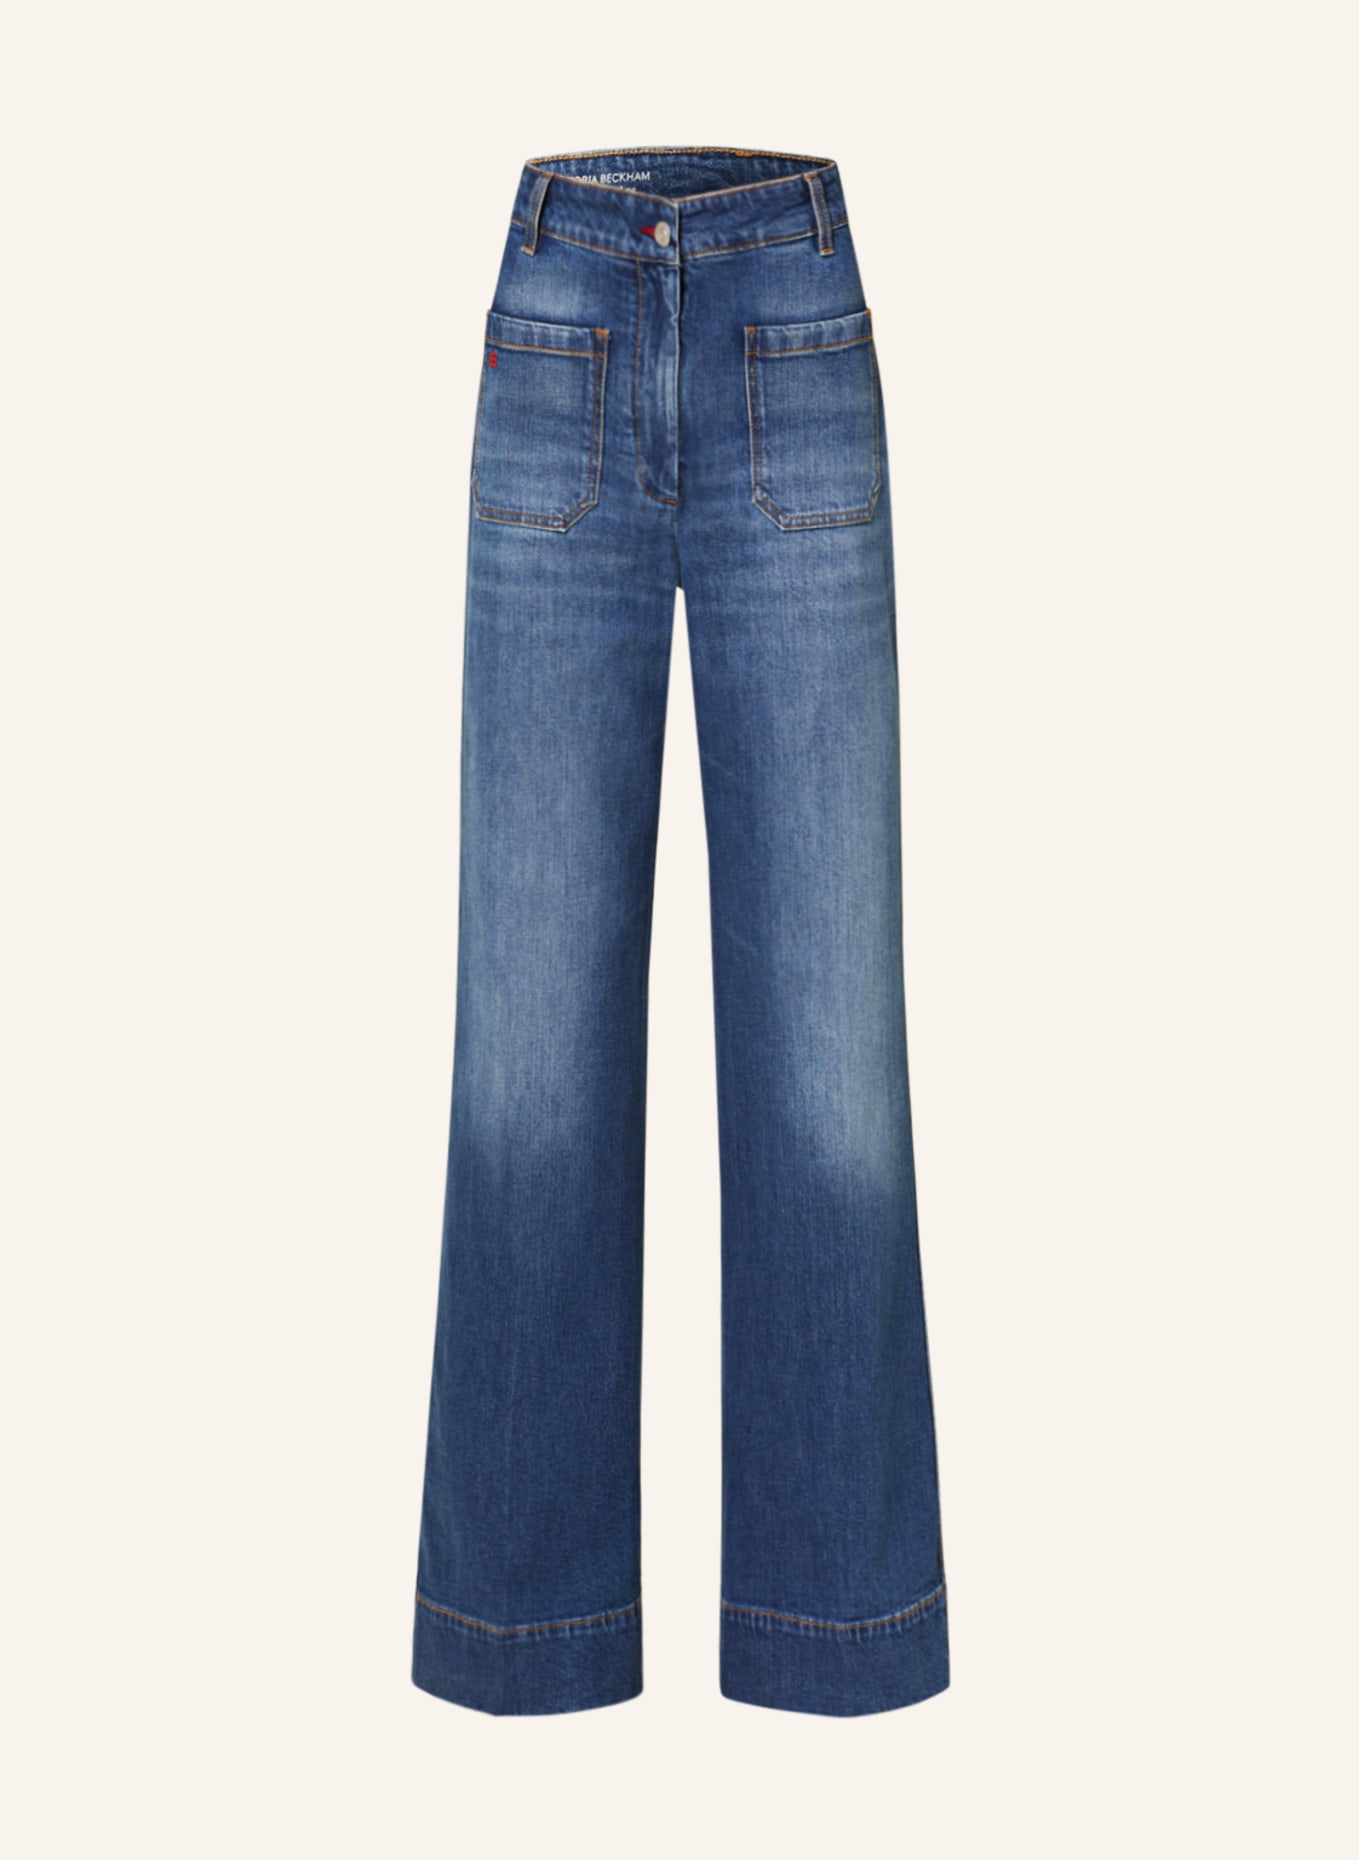 VICTORIABECKHAM Straight Jeans ALINA, Farbe: 8568 DARK VINTAGE WASH (Bild 1)